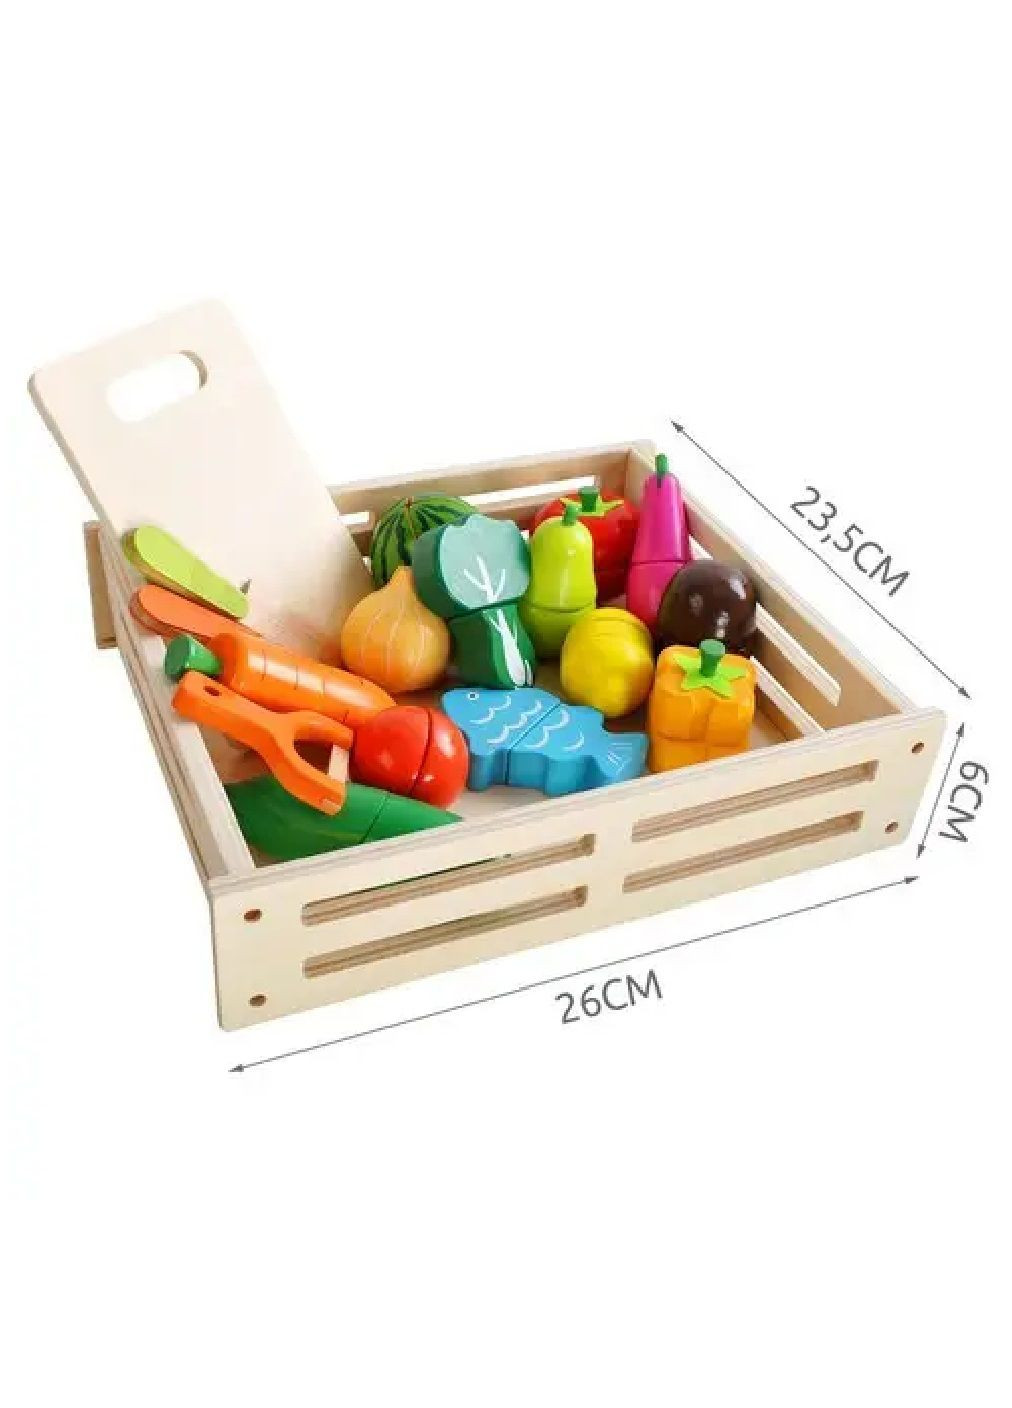 Детский деревянный комплект набор овощей фруктов для нарезания в ящике коробке 34 элемента 23,5х26х6 см (476856-Prob) Unbranded (291984585)